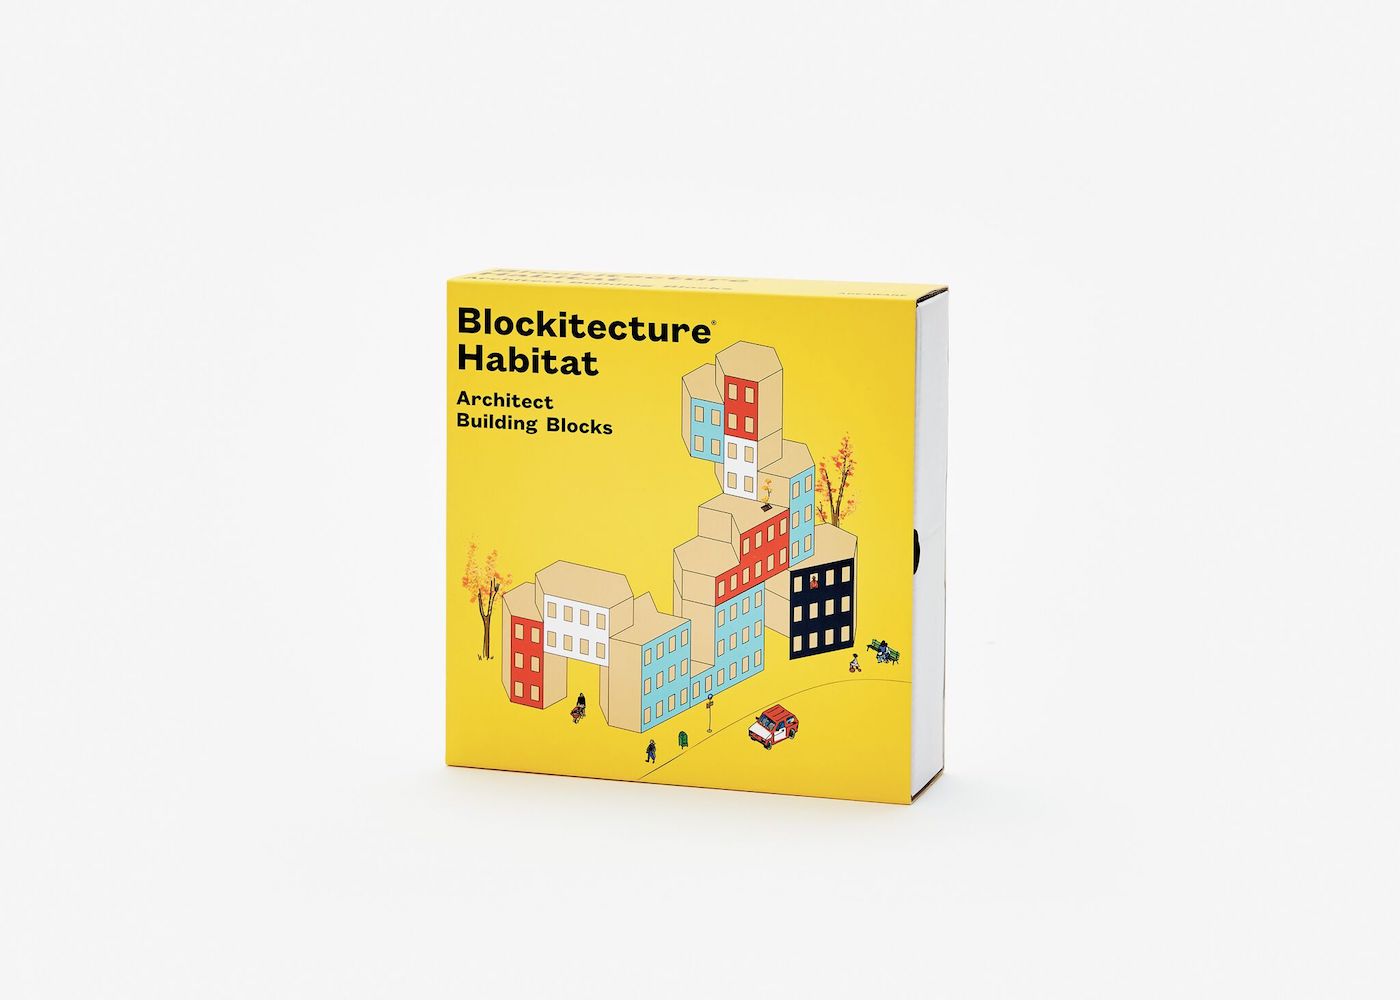 Blockitecture - Habitat